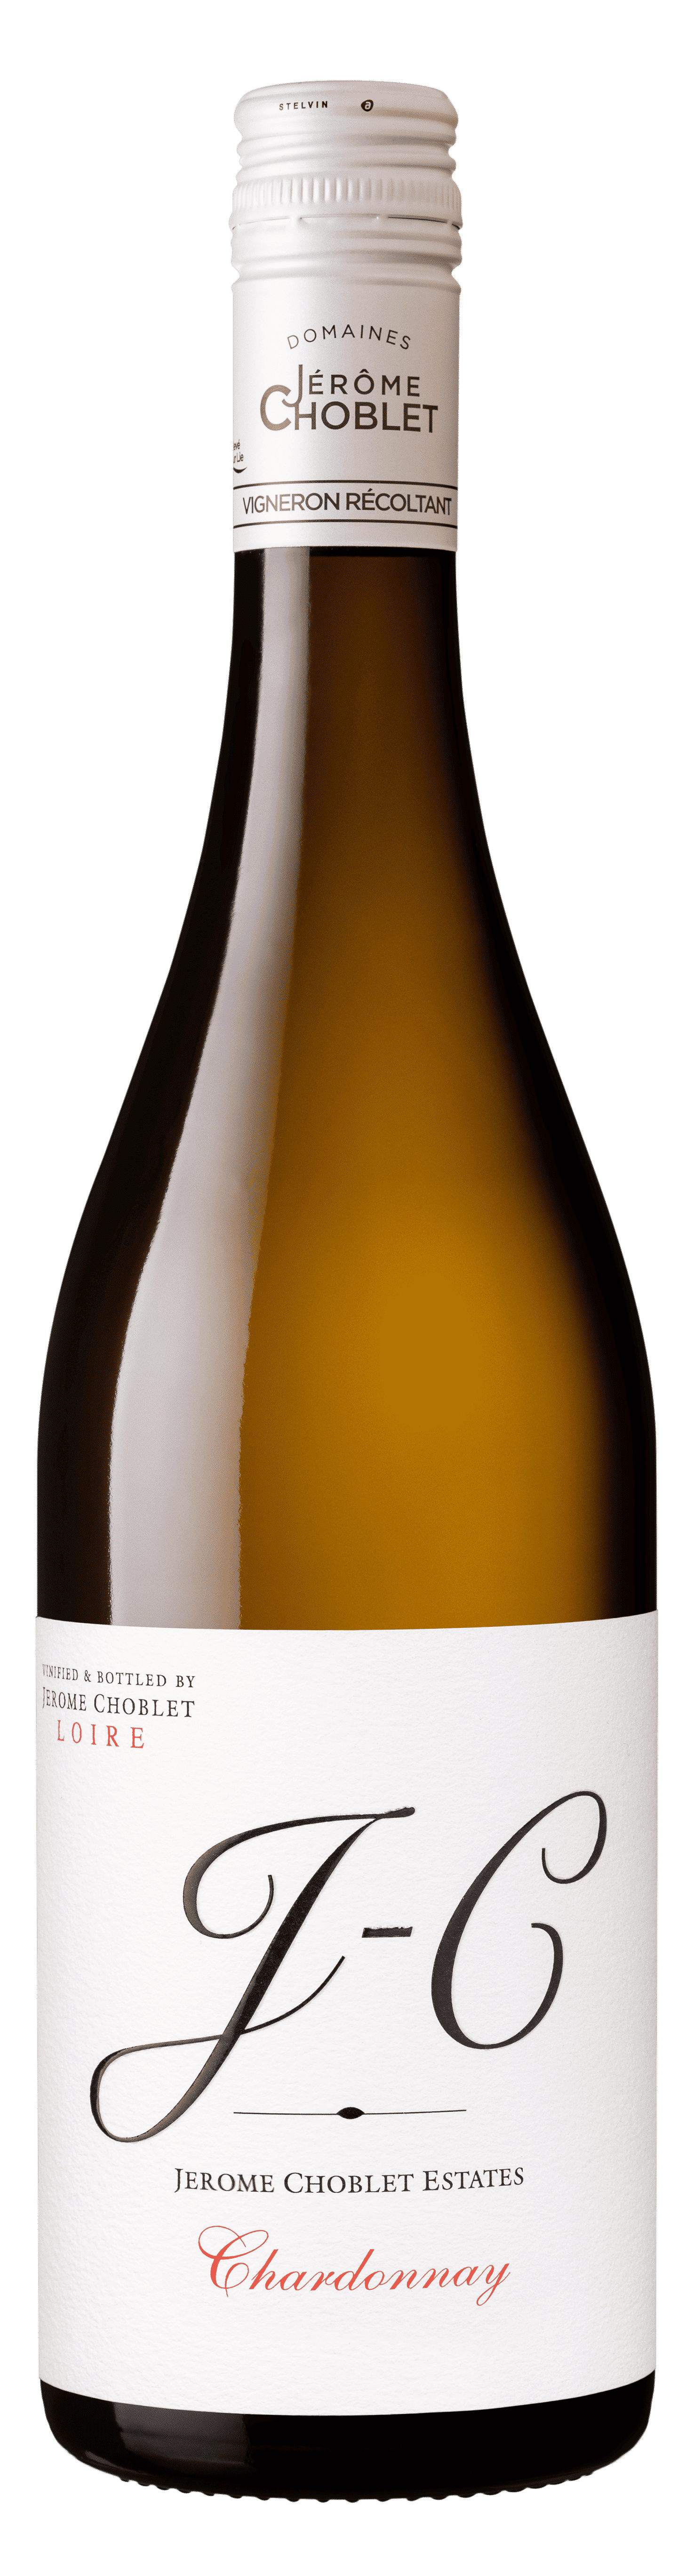 Domaine des Herbauges - J-C Chardonnay IGP du Val de Loire